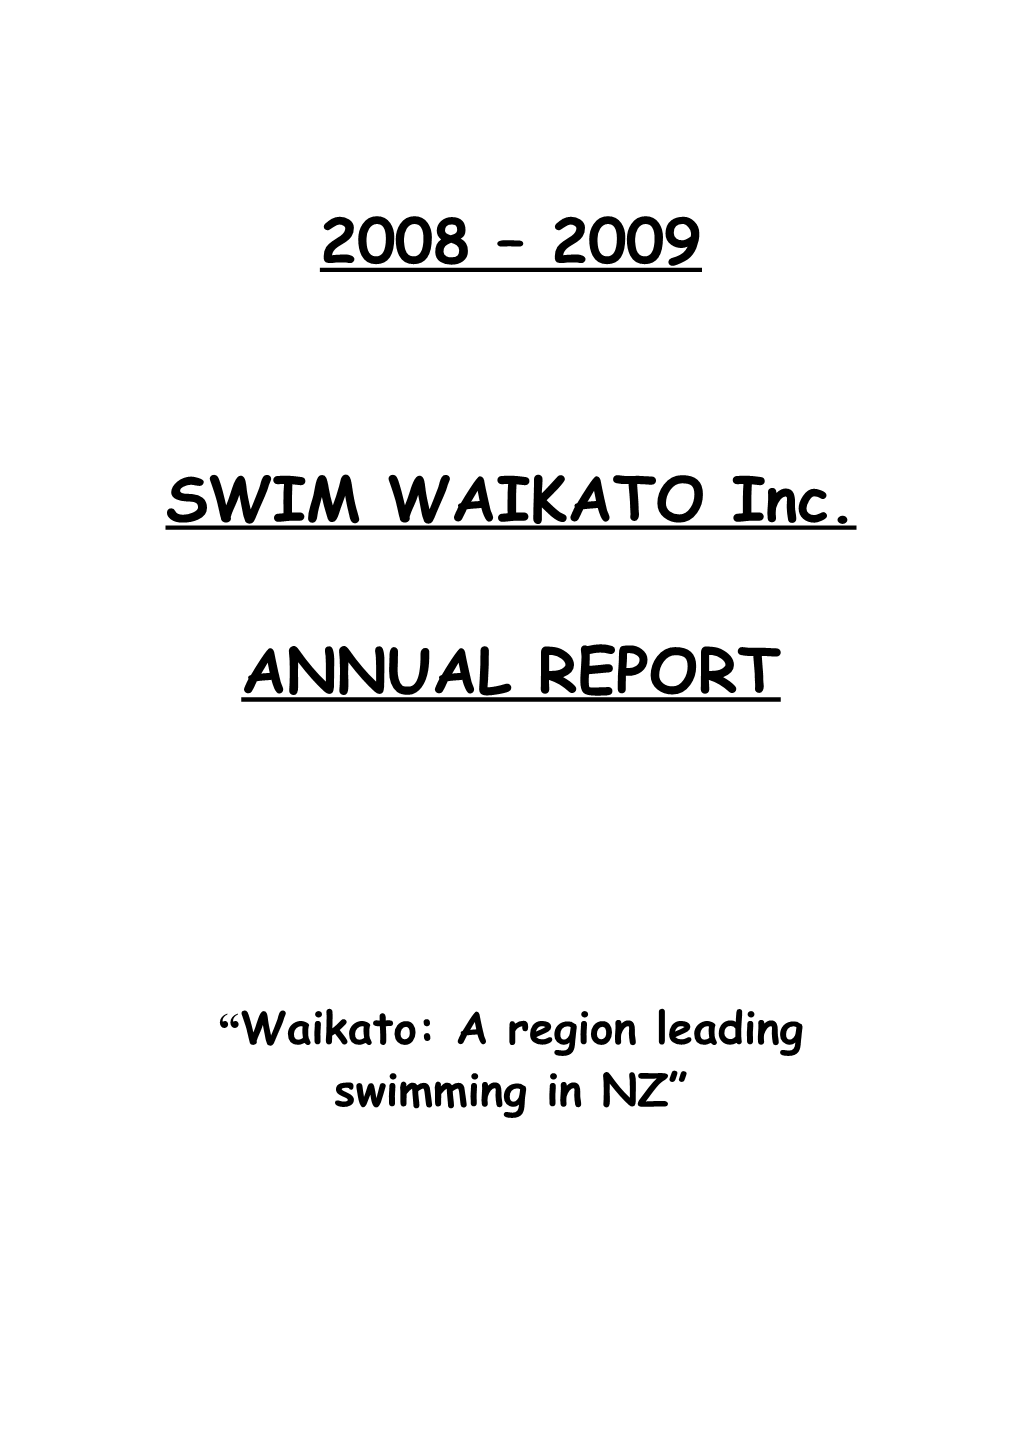 Waikato: a Region Leading Swimming in NZ